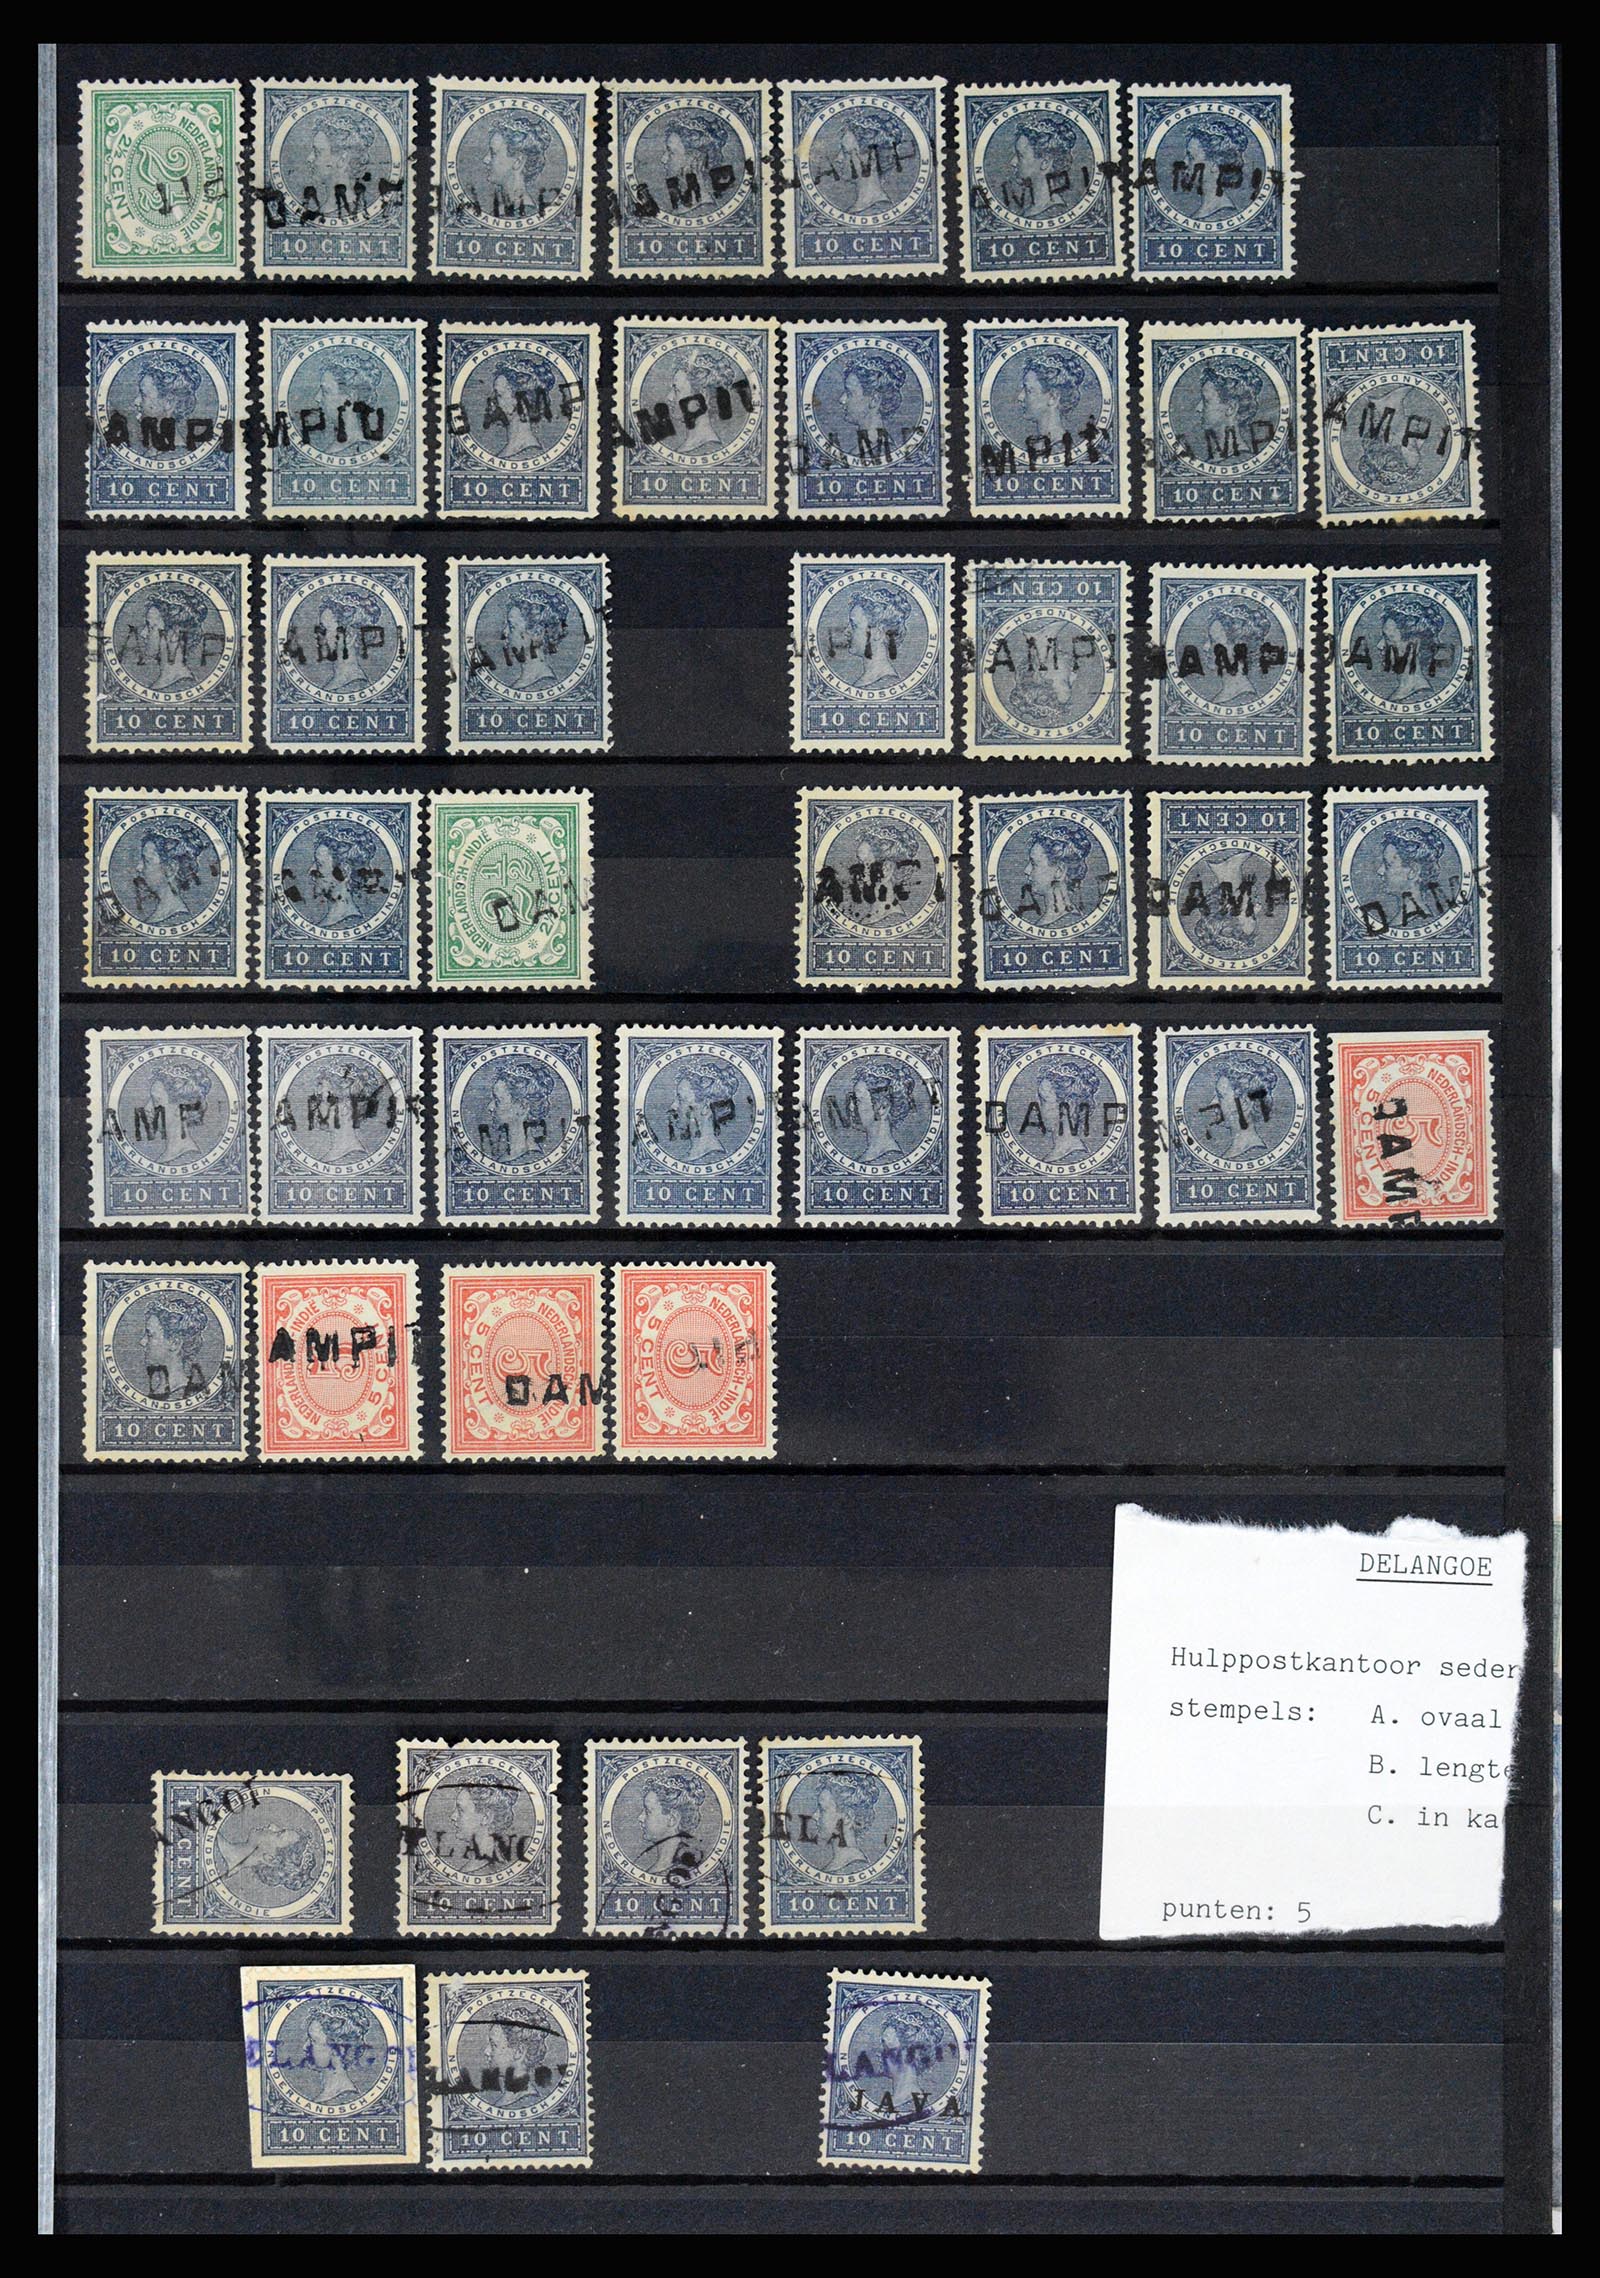 36512 023 - Stamp collection 36512 Nederlands Indië stempels 1872-1930.